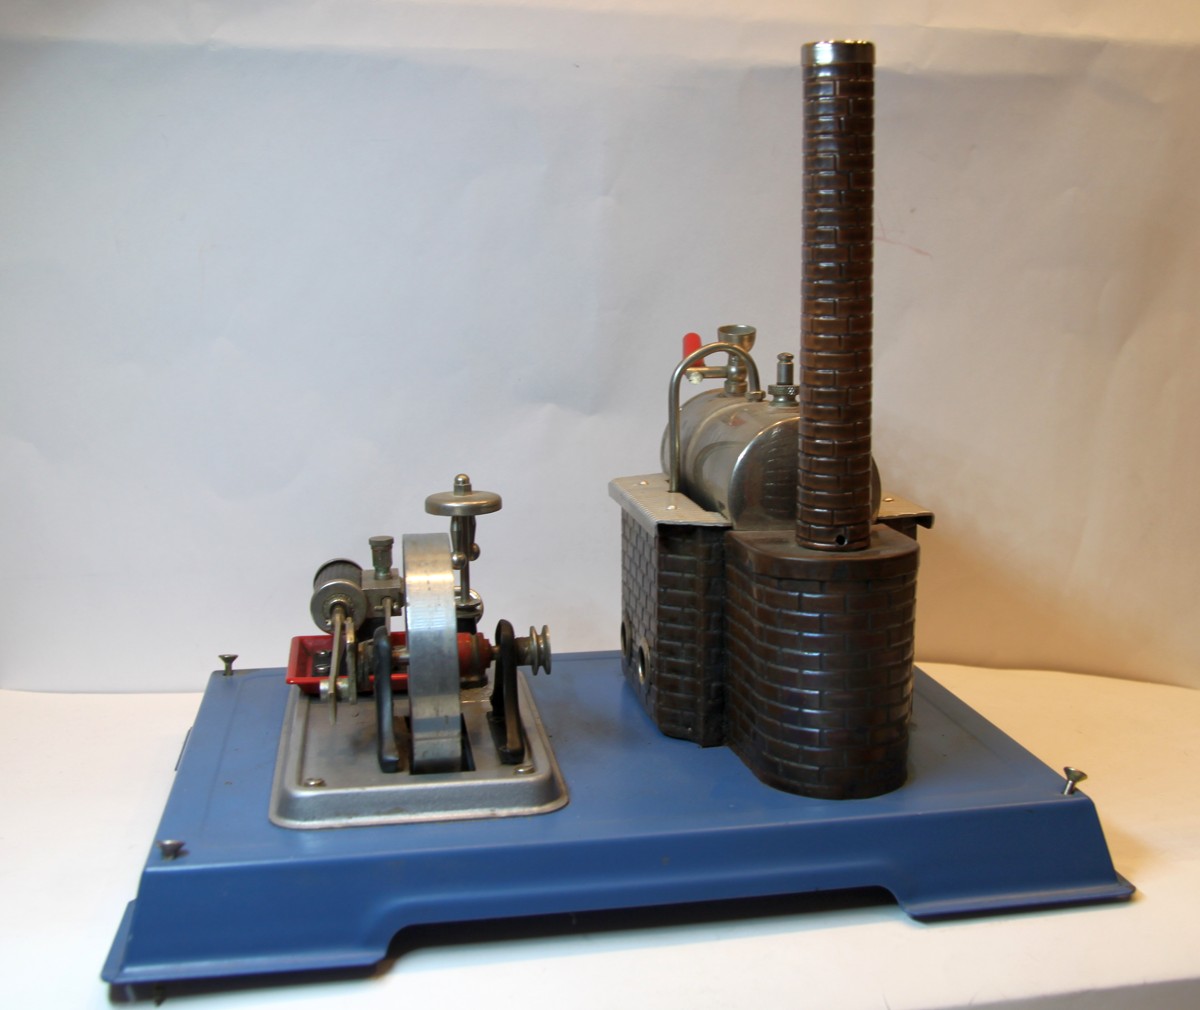 WILESCO Dampfmaschine gebraucht, Grundstation der Dampfmaschine ca. 20 cm x 26 cm, eine Funktionsprüfung hat nicht stattgefunden (Zustand siehe Bilder)